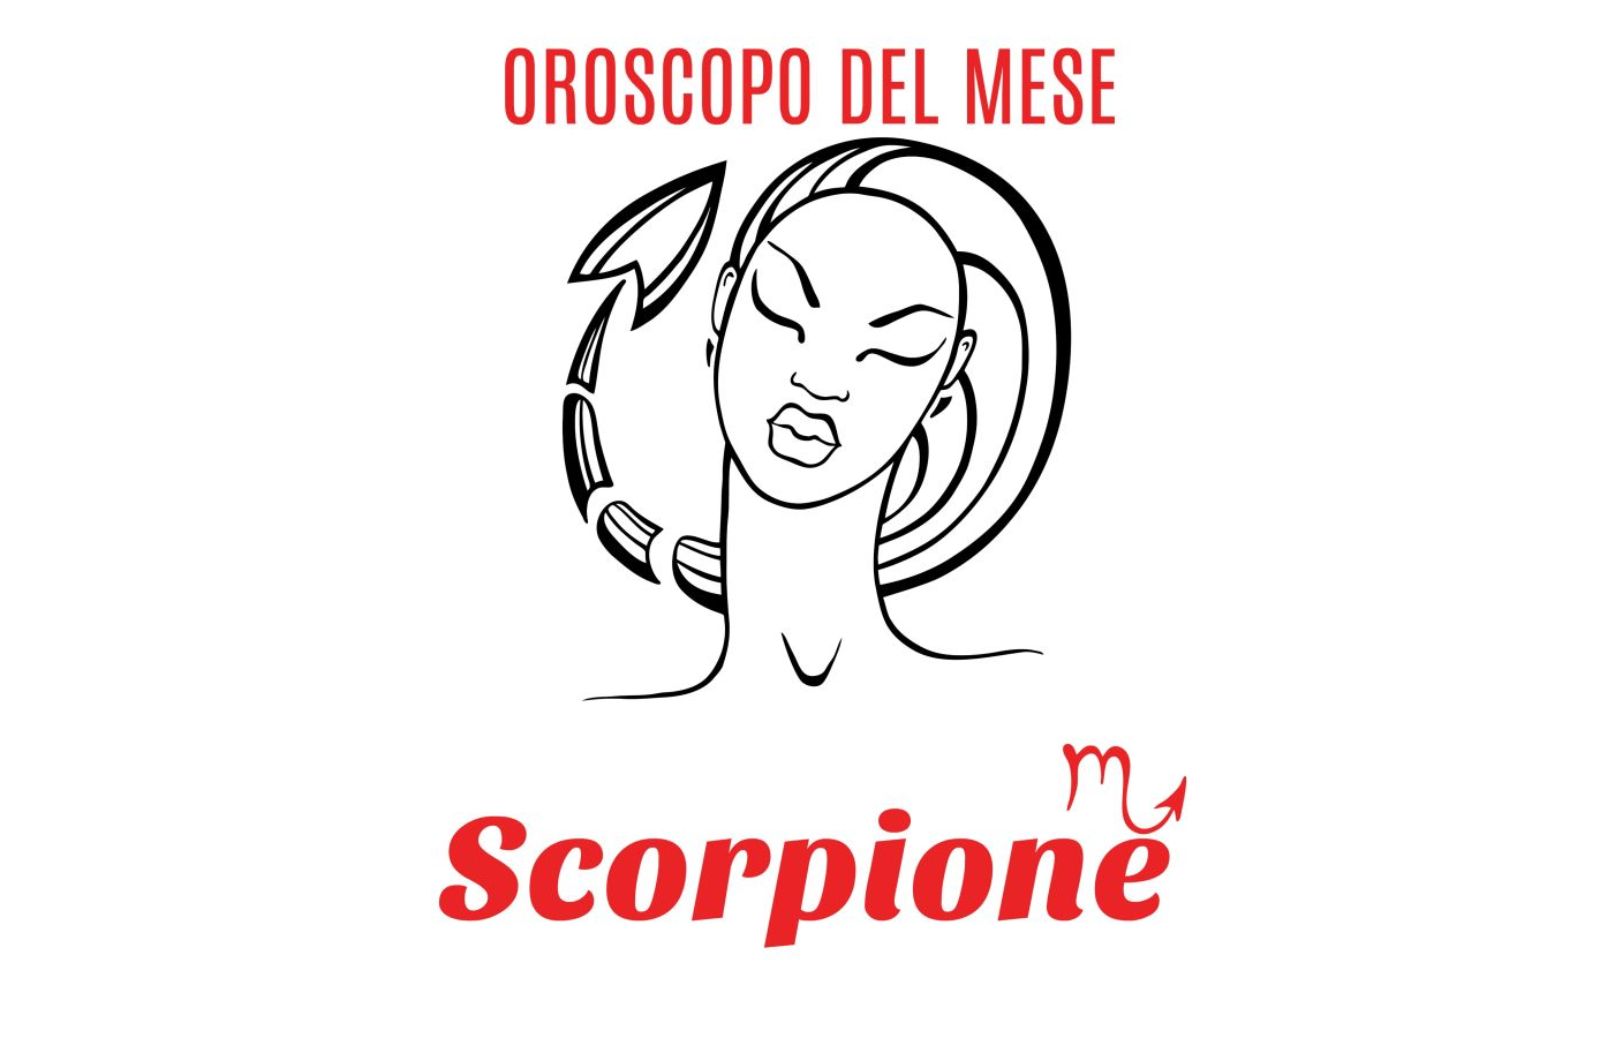 Oroscopo del mese: Scorpione - ottobre 2020